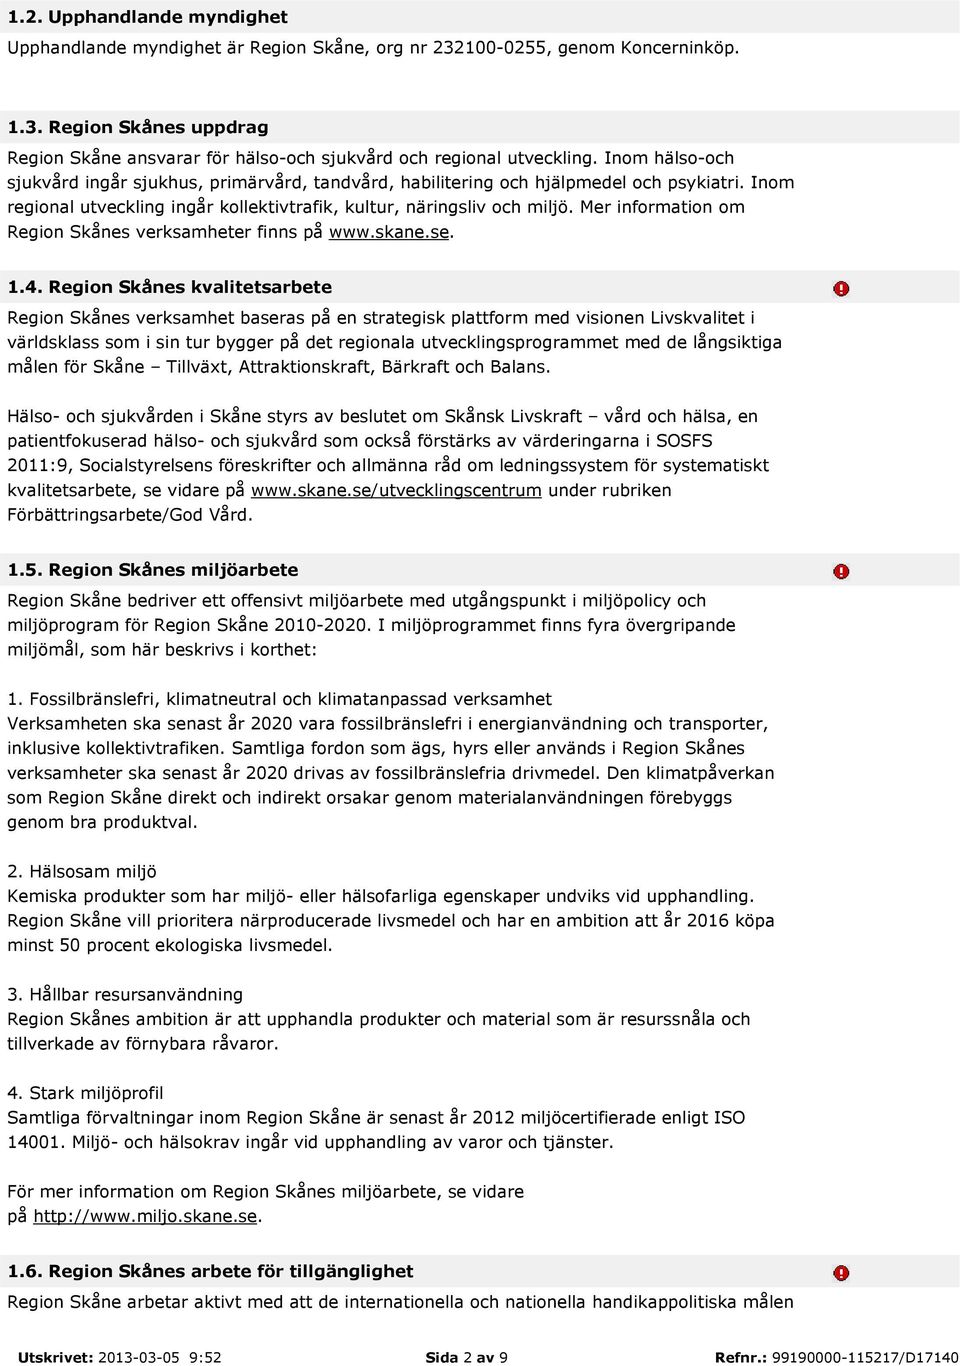 Mer information om Region Skånes verksamheter finns på www.skane.se. 1.4.